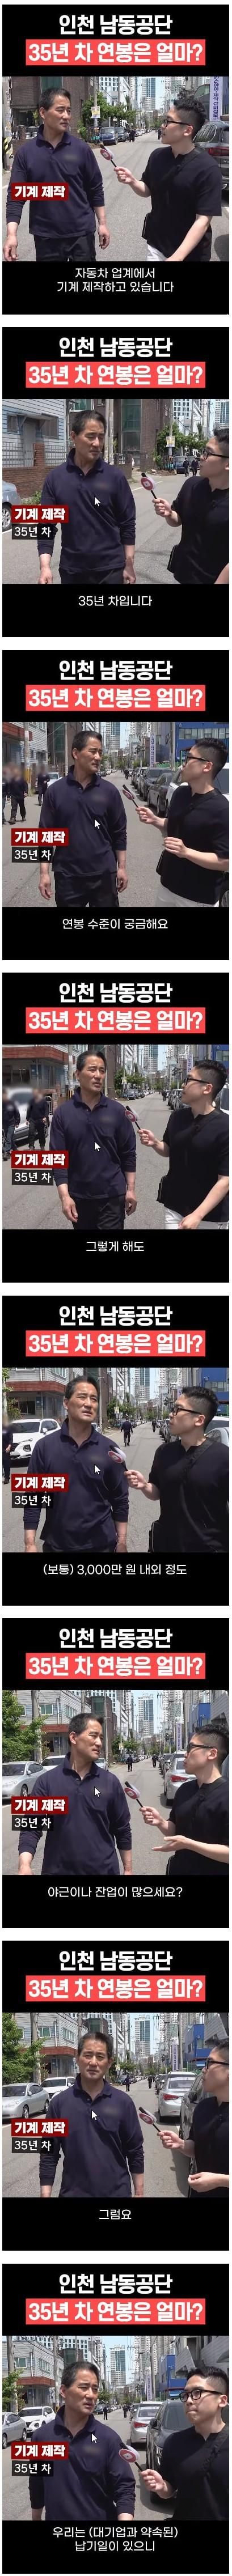 인천 남동공단 35년차 직장인 연봉 수준